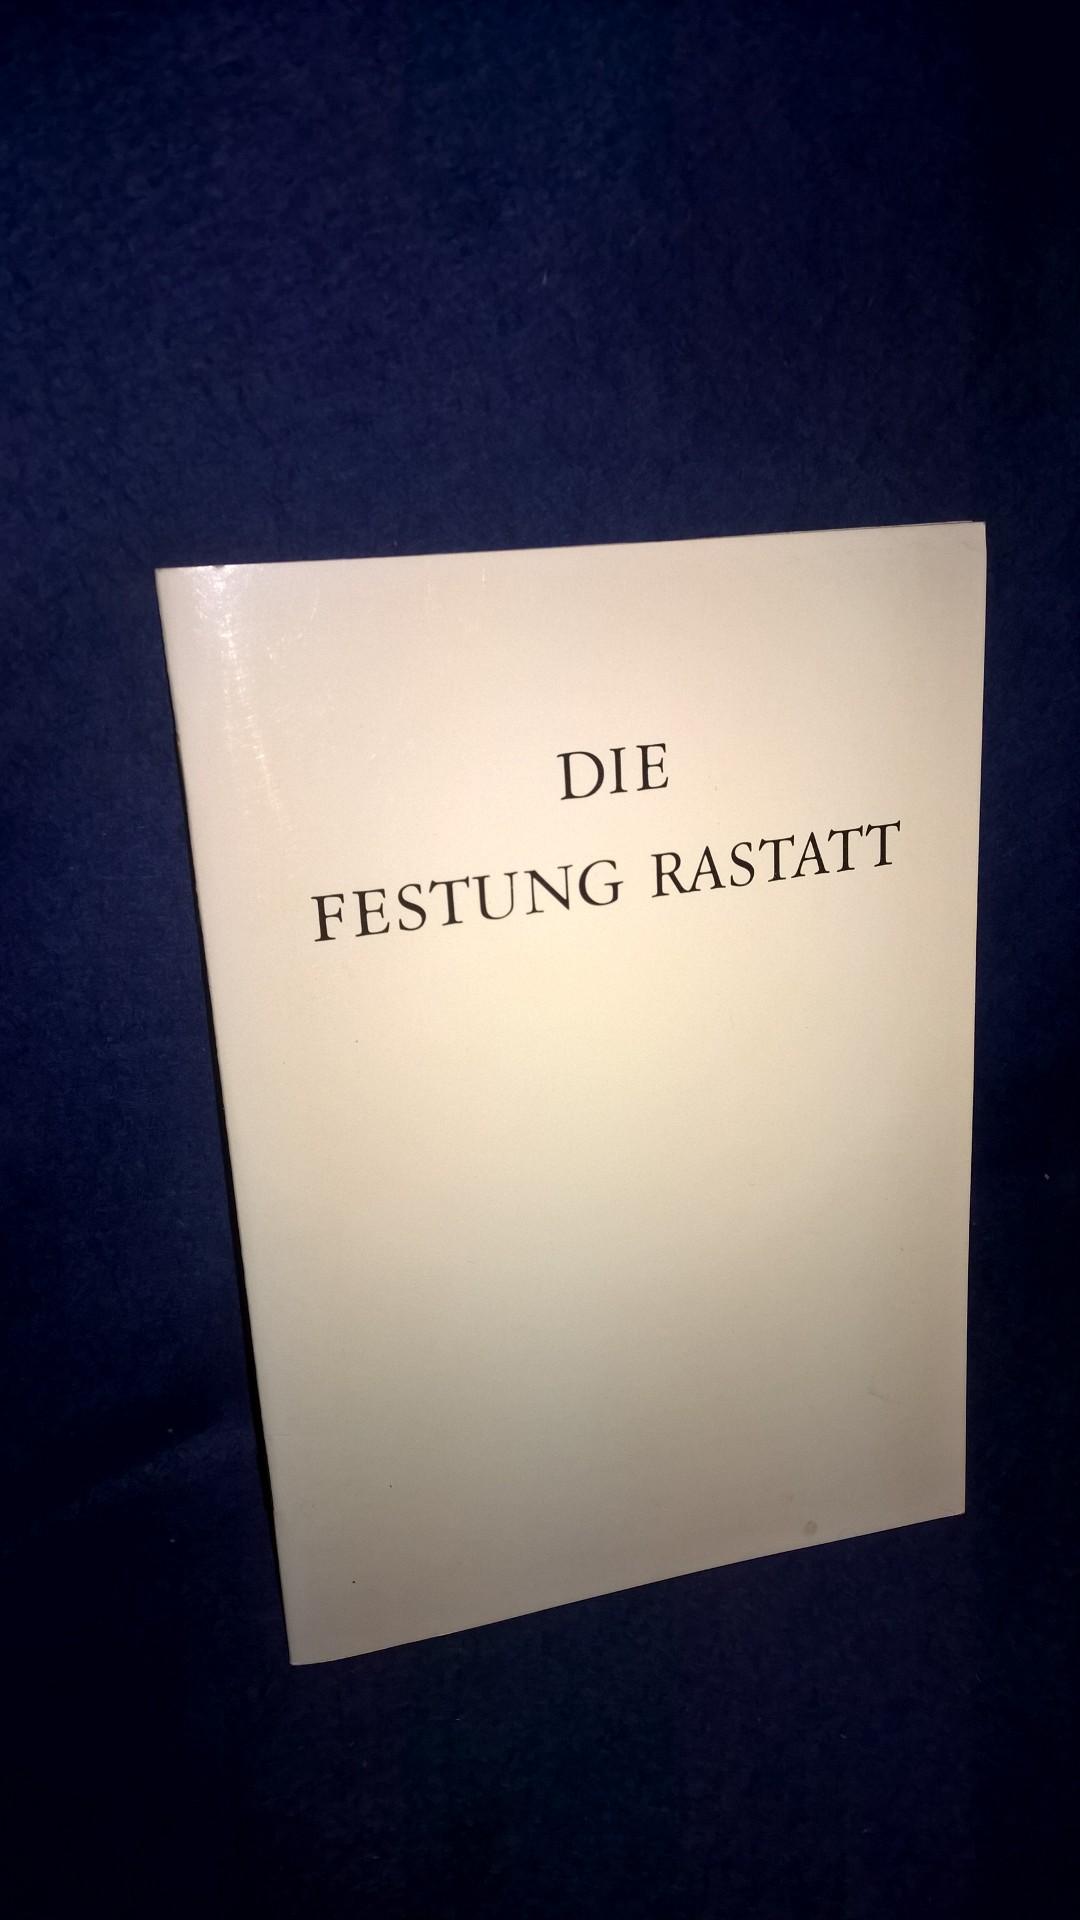 Die Festung Rastatt. Eine Beschreibung der ehemaligen Bundesfestung anhang eines Rundganges durch die Stadt mittels beigefügter Falt-Karte von Rainer Kaufmann.